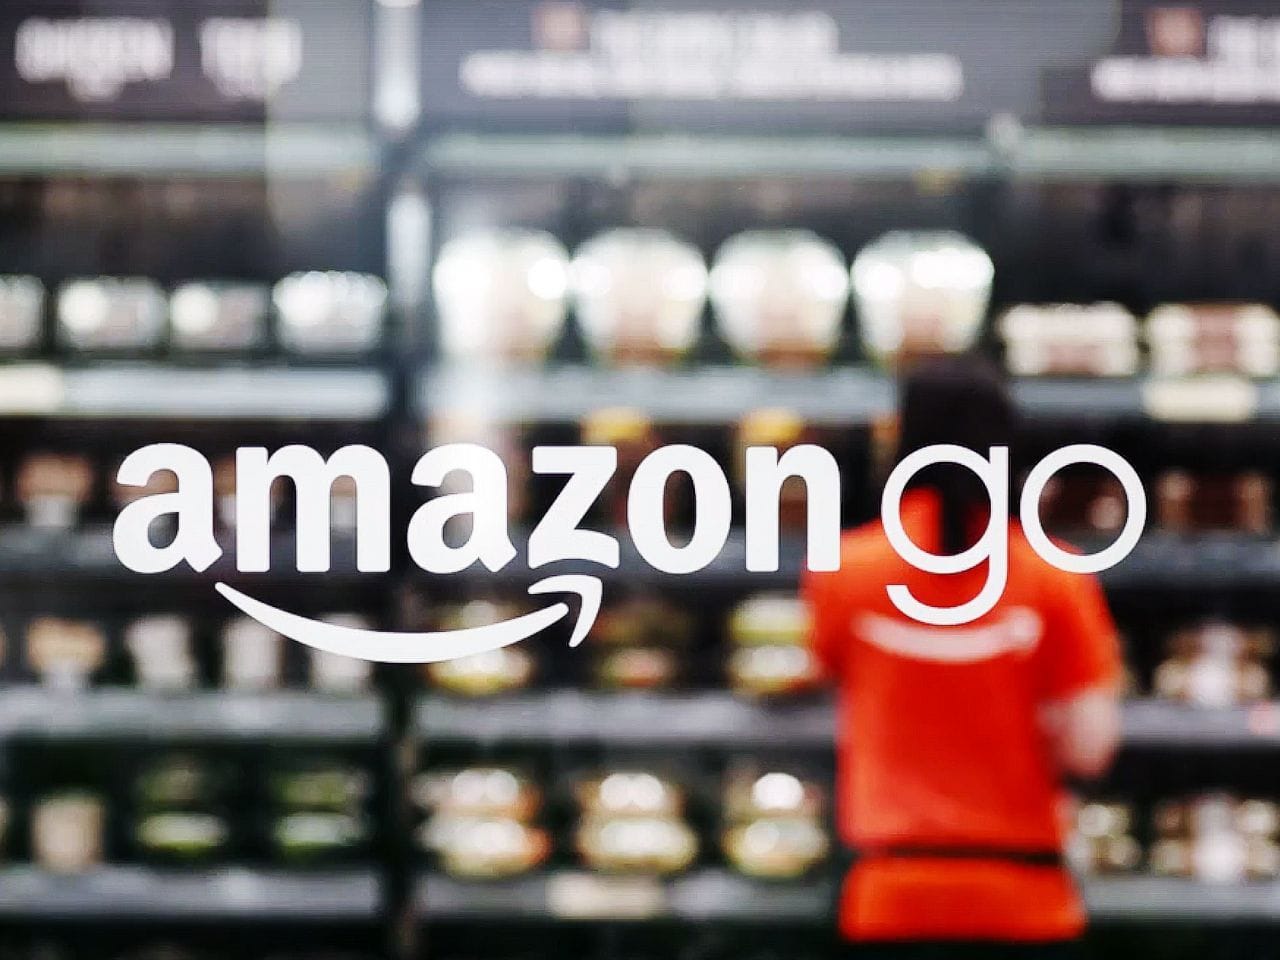 Amazon Go : Amazon lance son premier magasin physique sans caisse en Europe